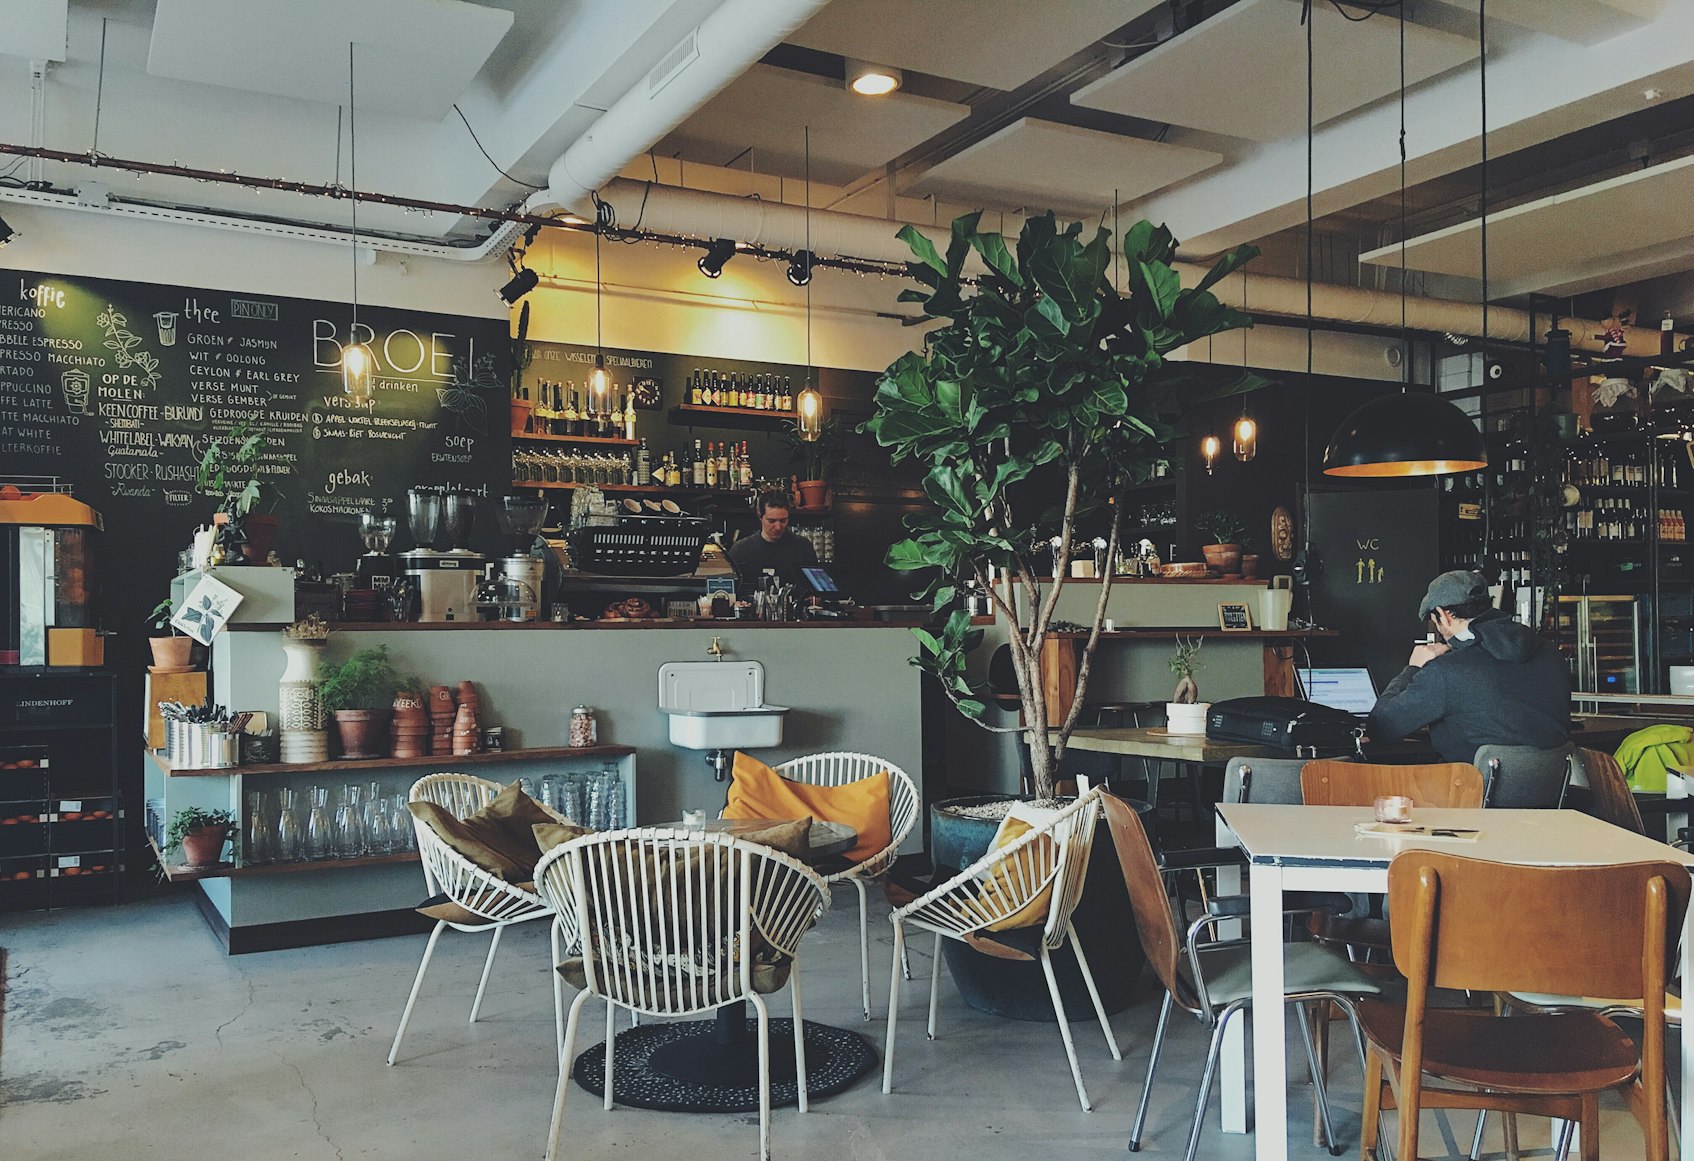 A Lomo E’ Mula Cafe
